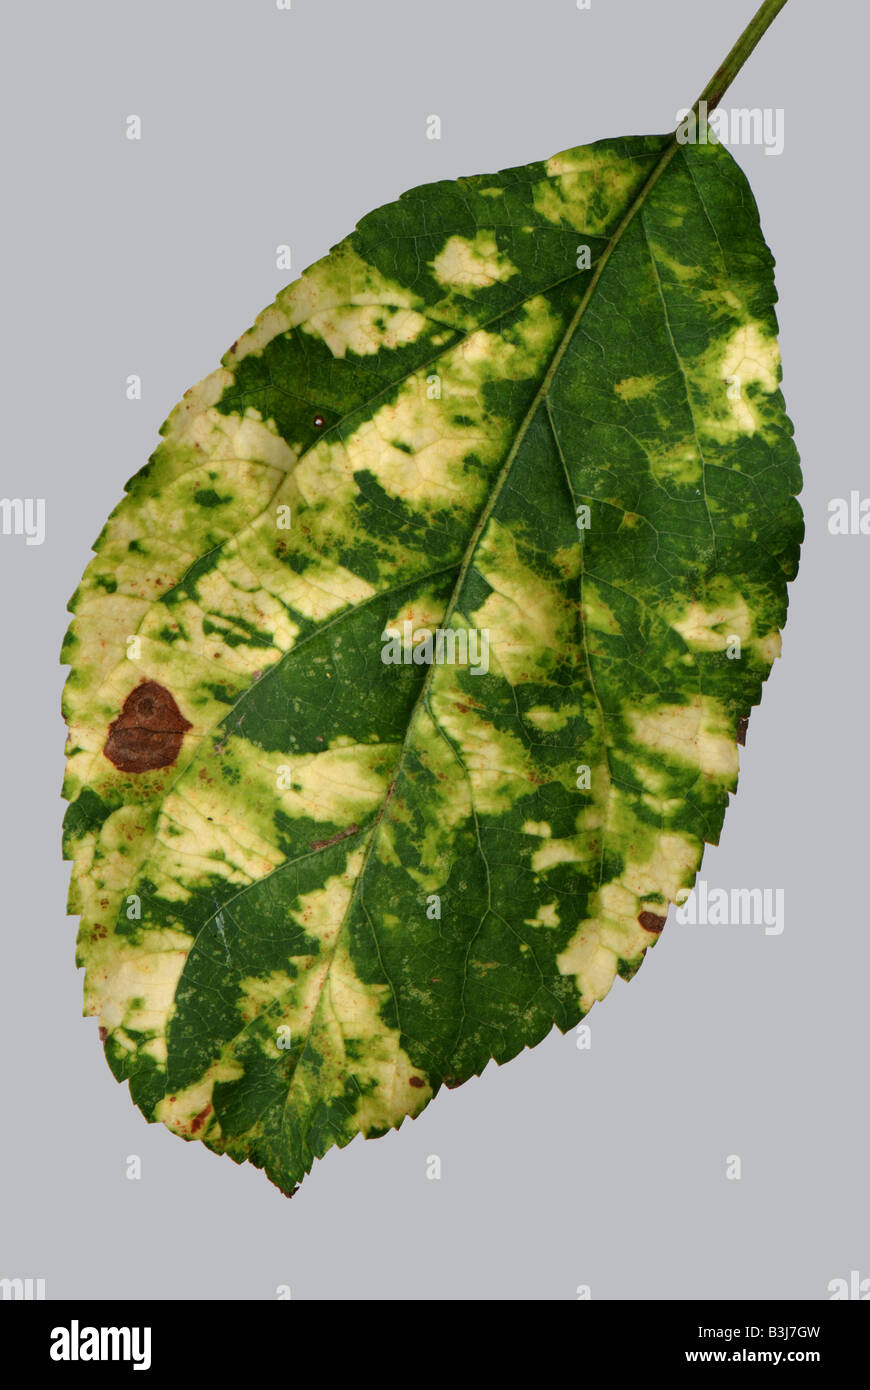 Foglia di Apple che mostra il giallo chiazze sintomi di apple mosaic virus AMV Foto Stock